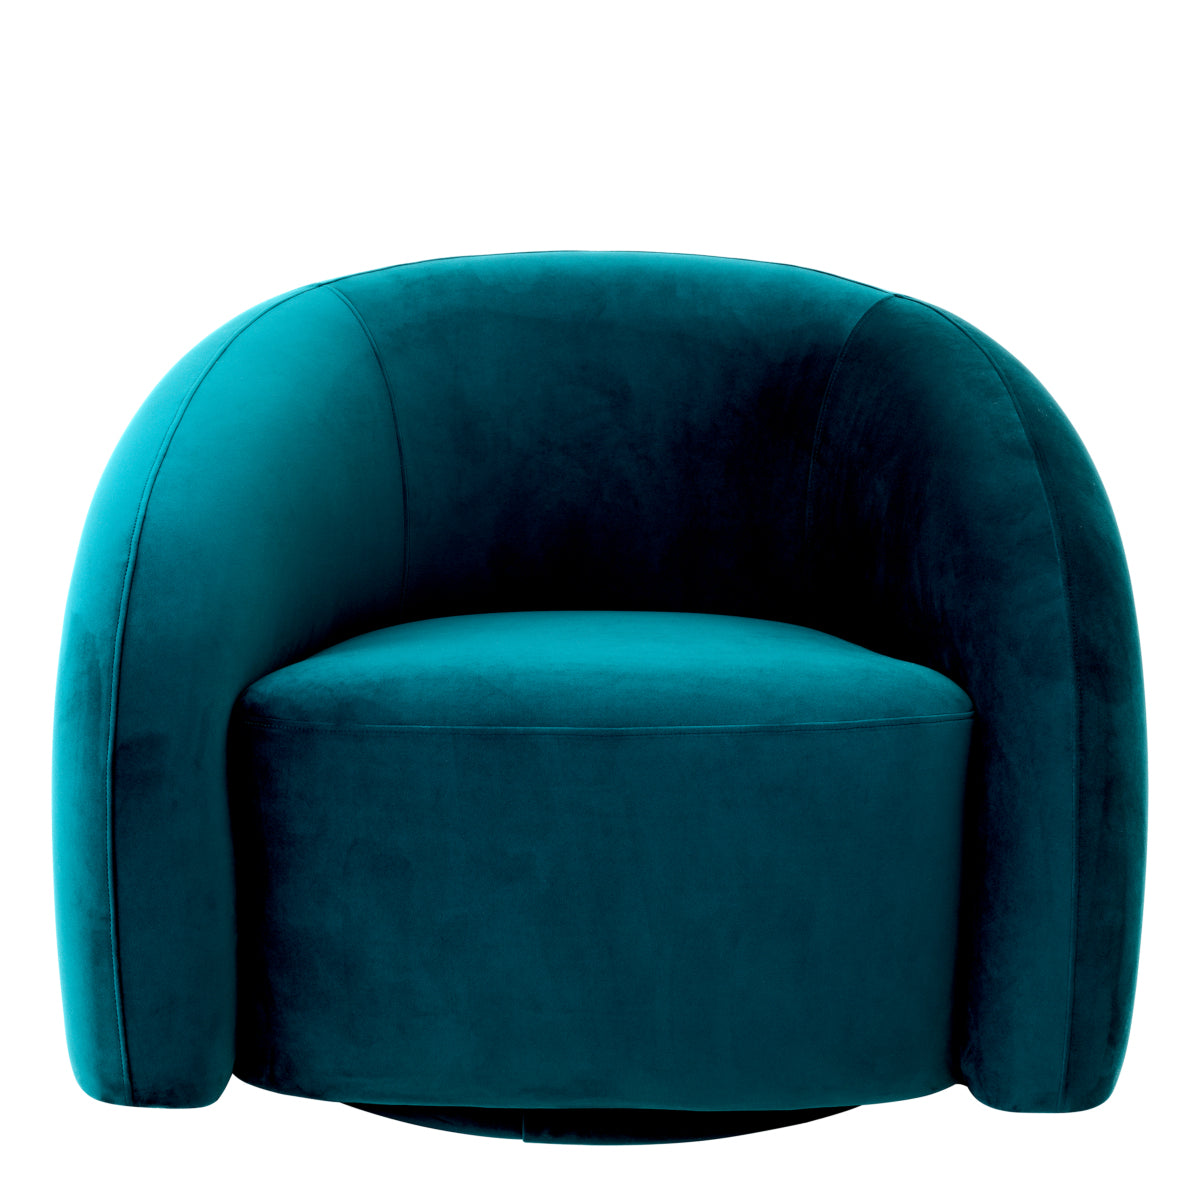 Swivel chair Eichholtz Novelle velvet turquoise